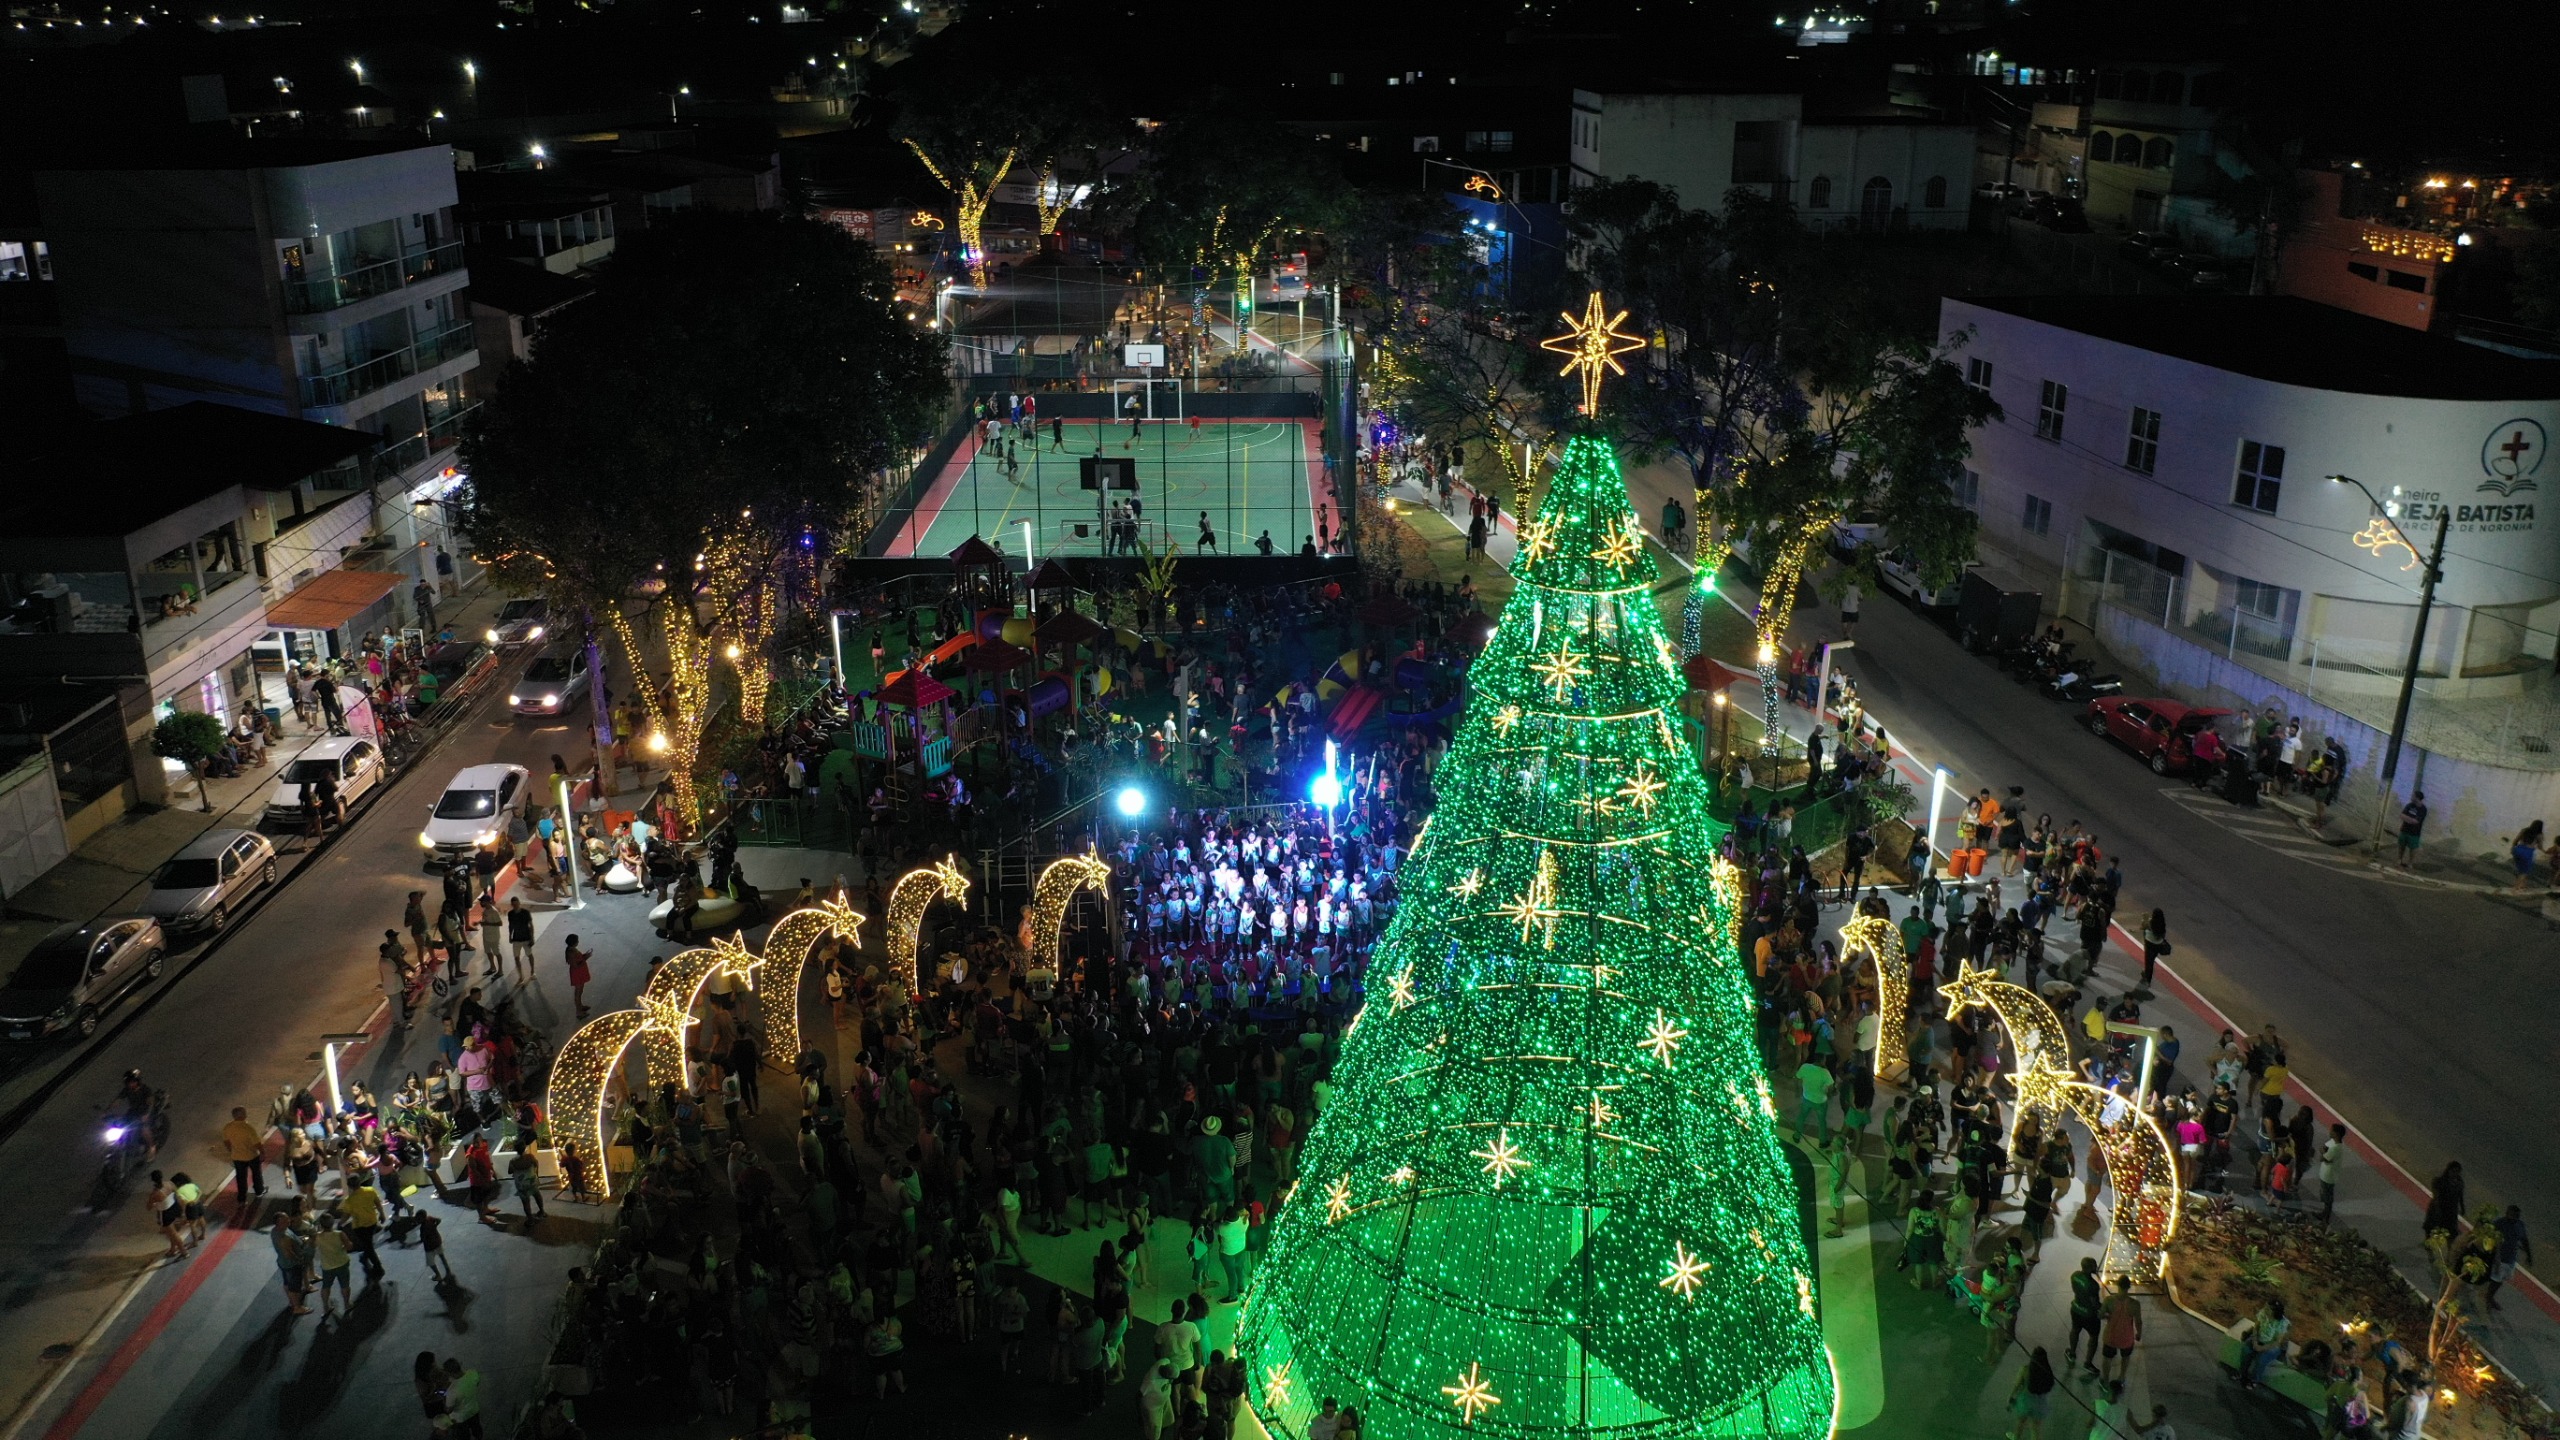 Festa de luzes: Praça João Sedde Neto brilha em noite inesquecível em Marcílio de Noronha